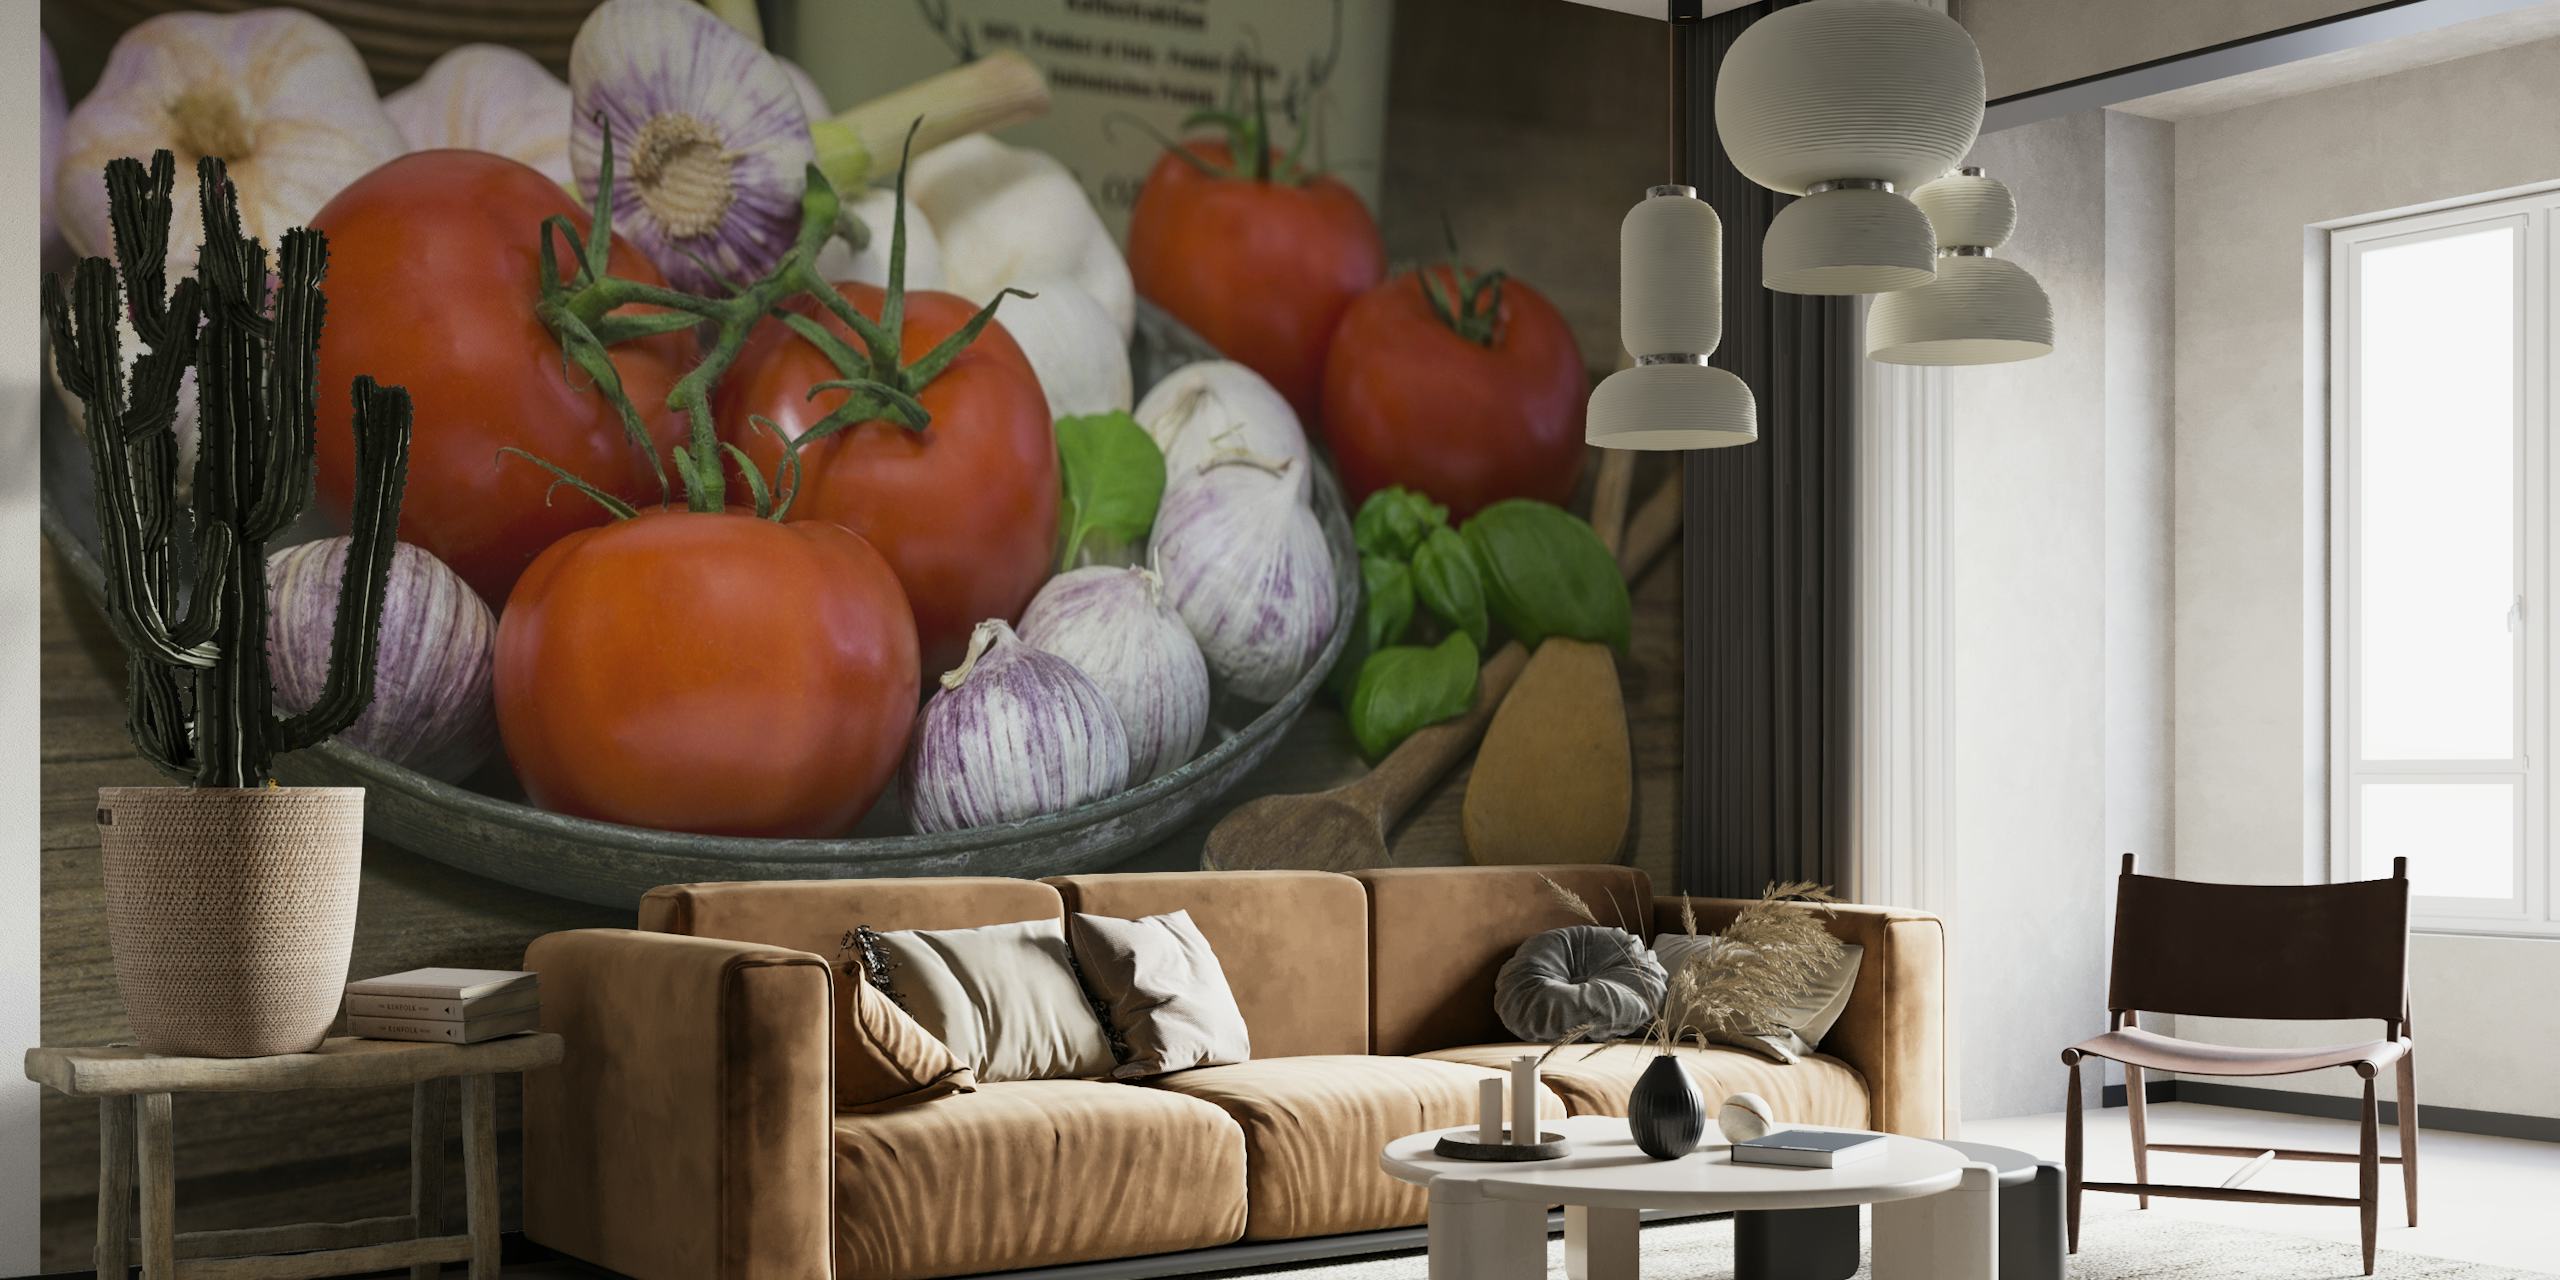 Mural de productos básicos de la cocina italiana con tomates, ajo y albahaca sobre una mesa de madera